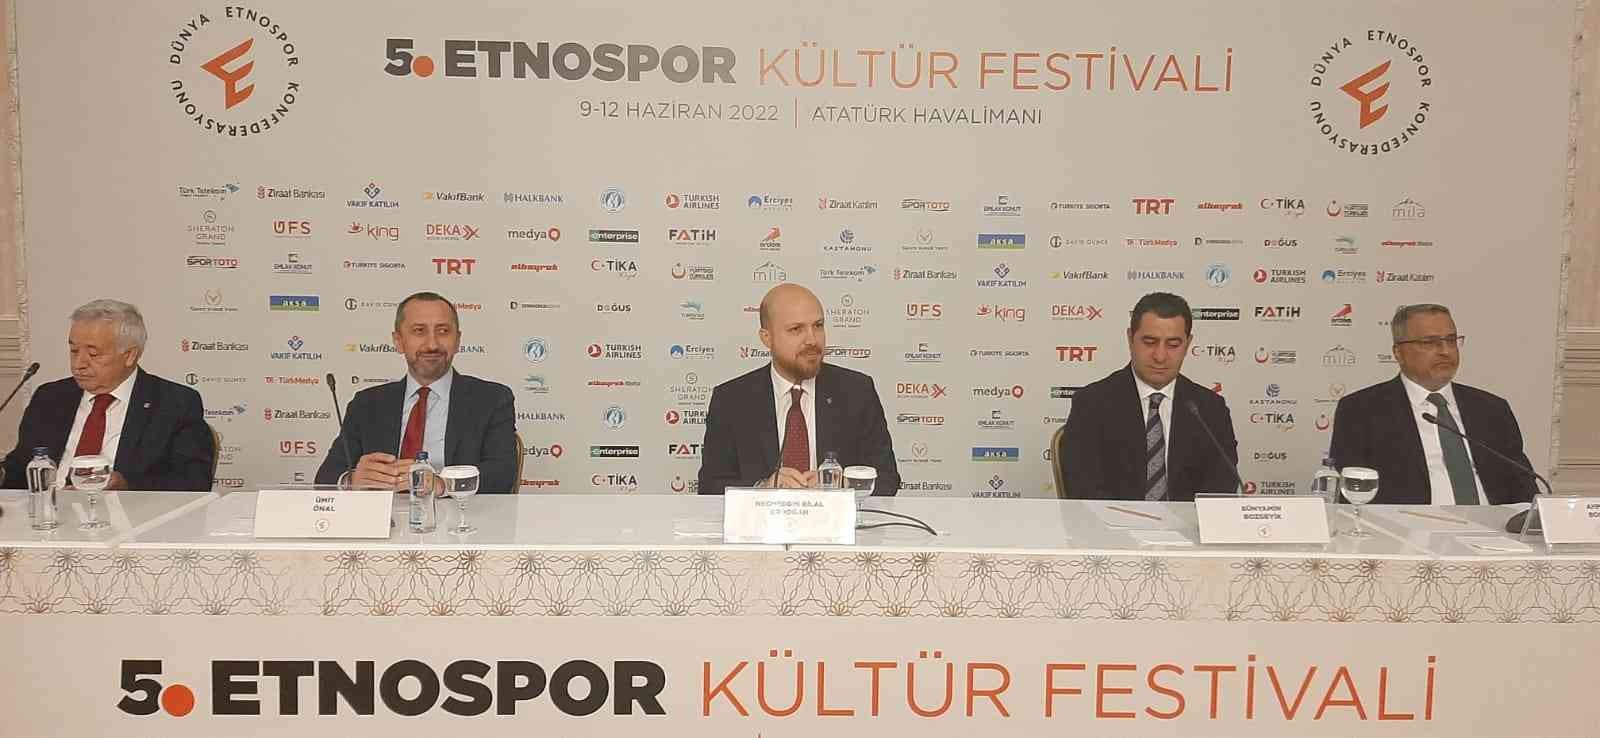 5. Etnospor Kültür Festivali’nin basın toplantısı gerçekleştirildi. Toplantıda konuşan Dünya Etnospor Konfederasyonu Başkanı Necmeddin Bilal ...